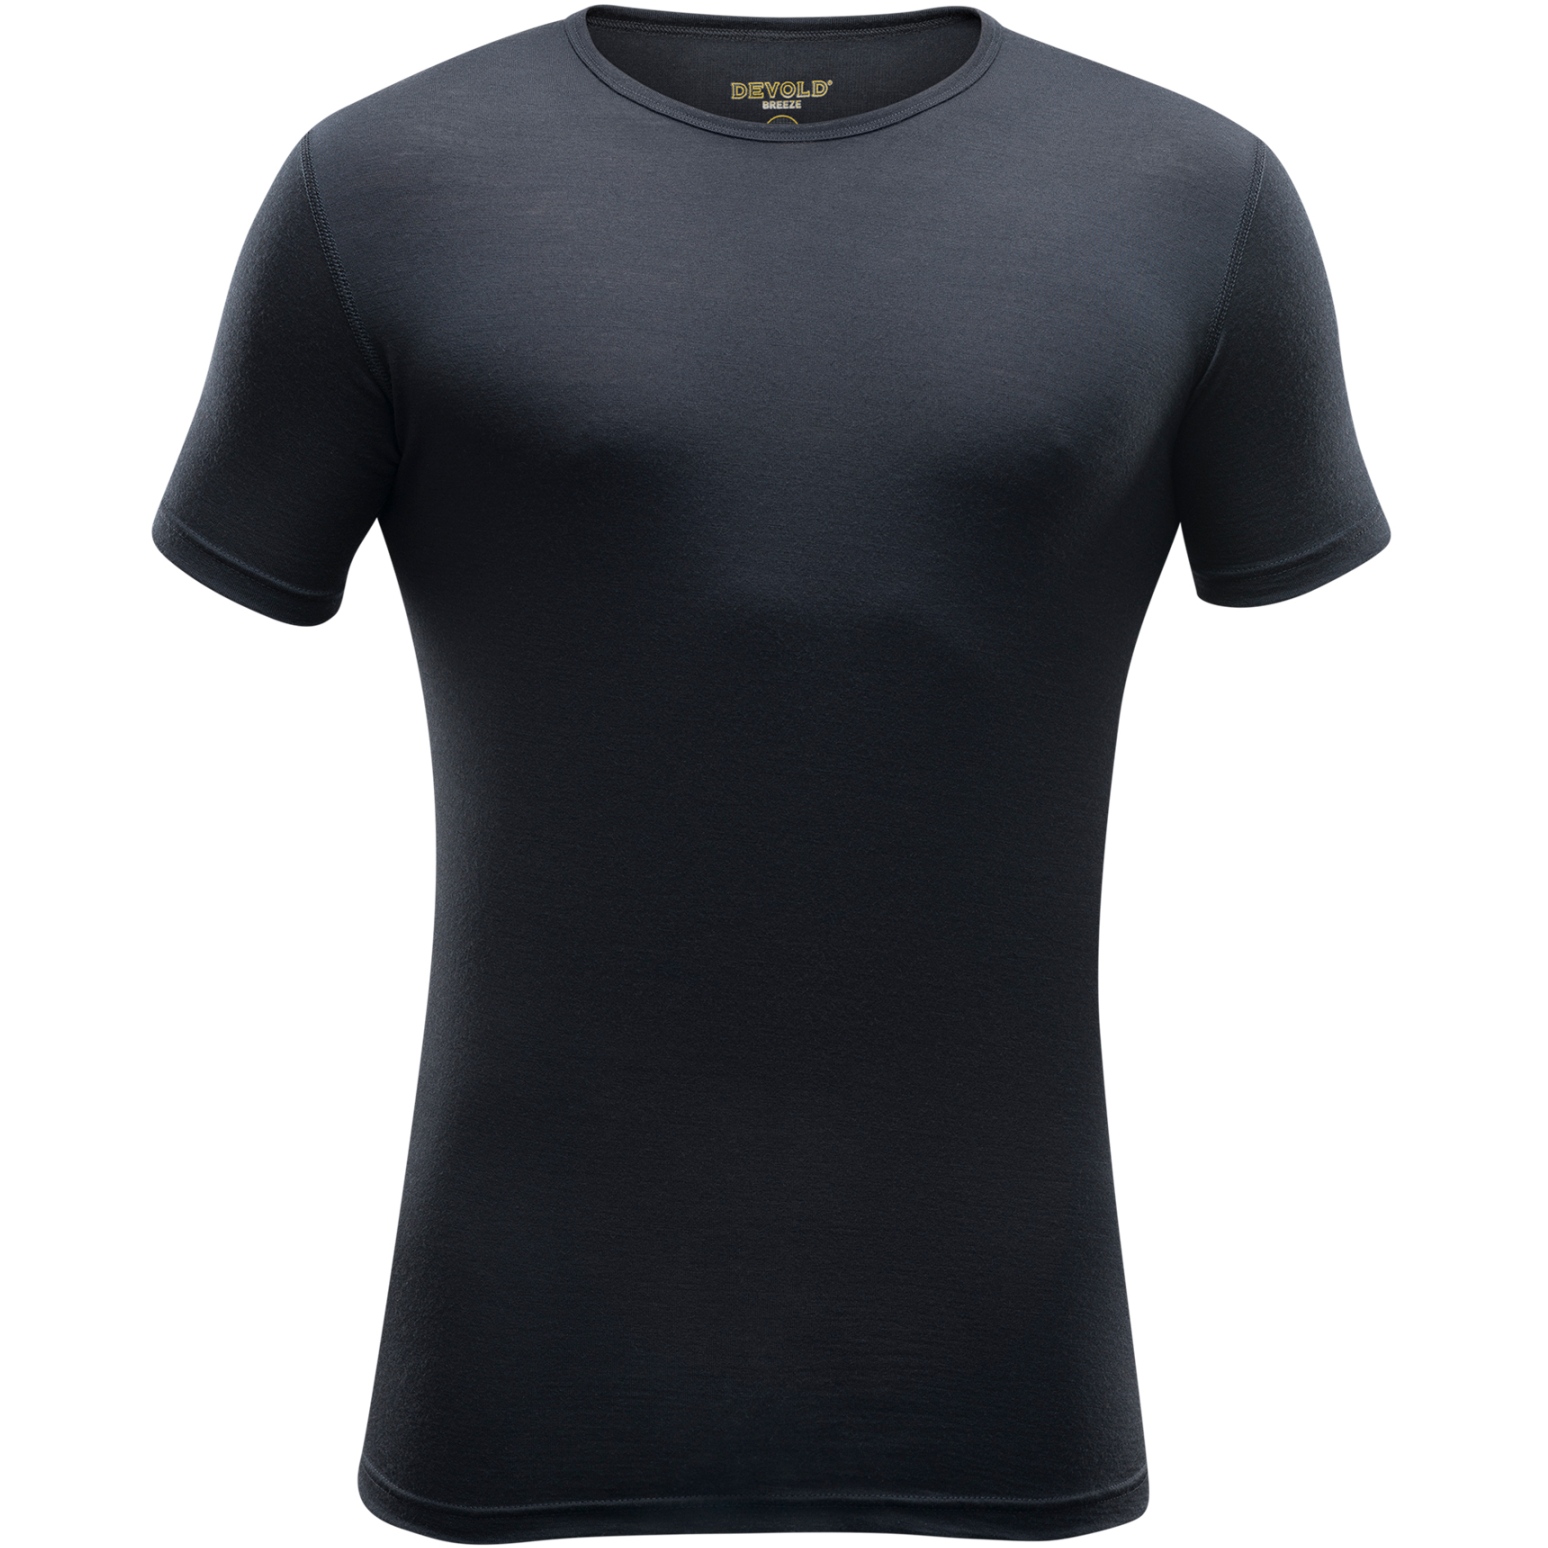 Produktbild von Devold Breeze Merino 150 T-Shirt Herren - 950A Schwarz